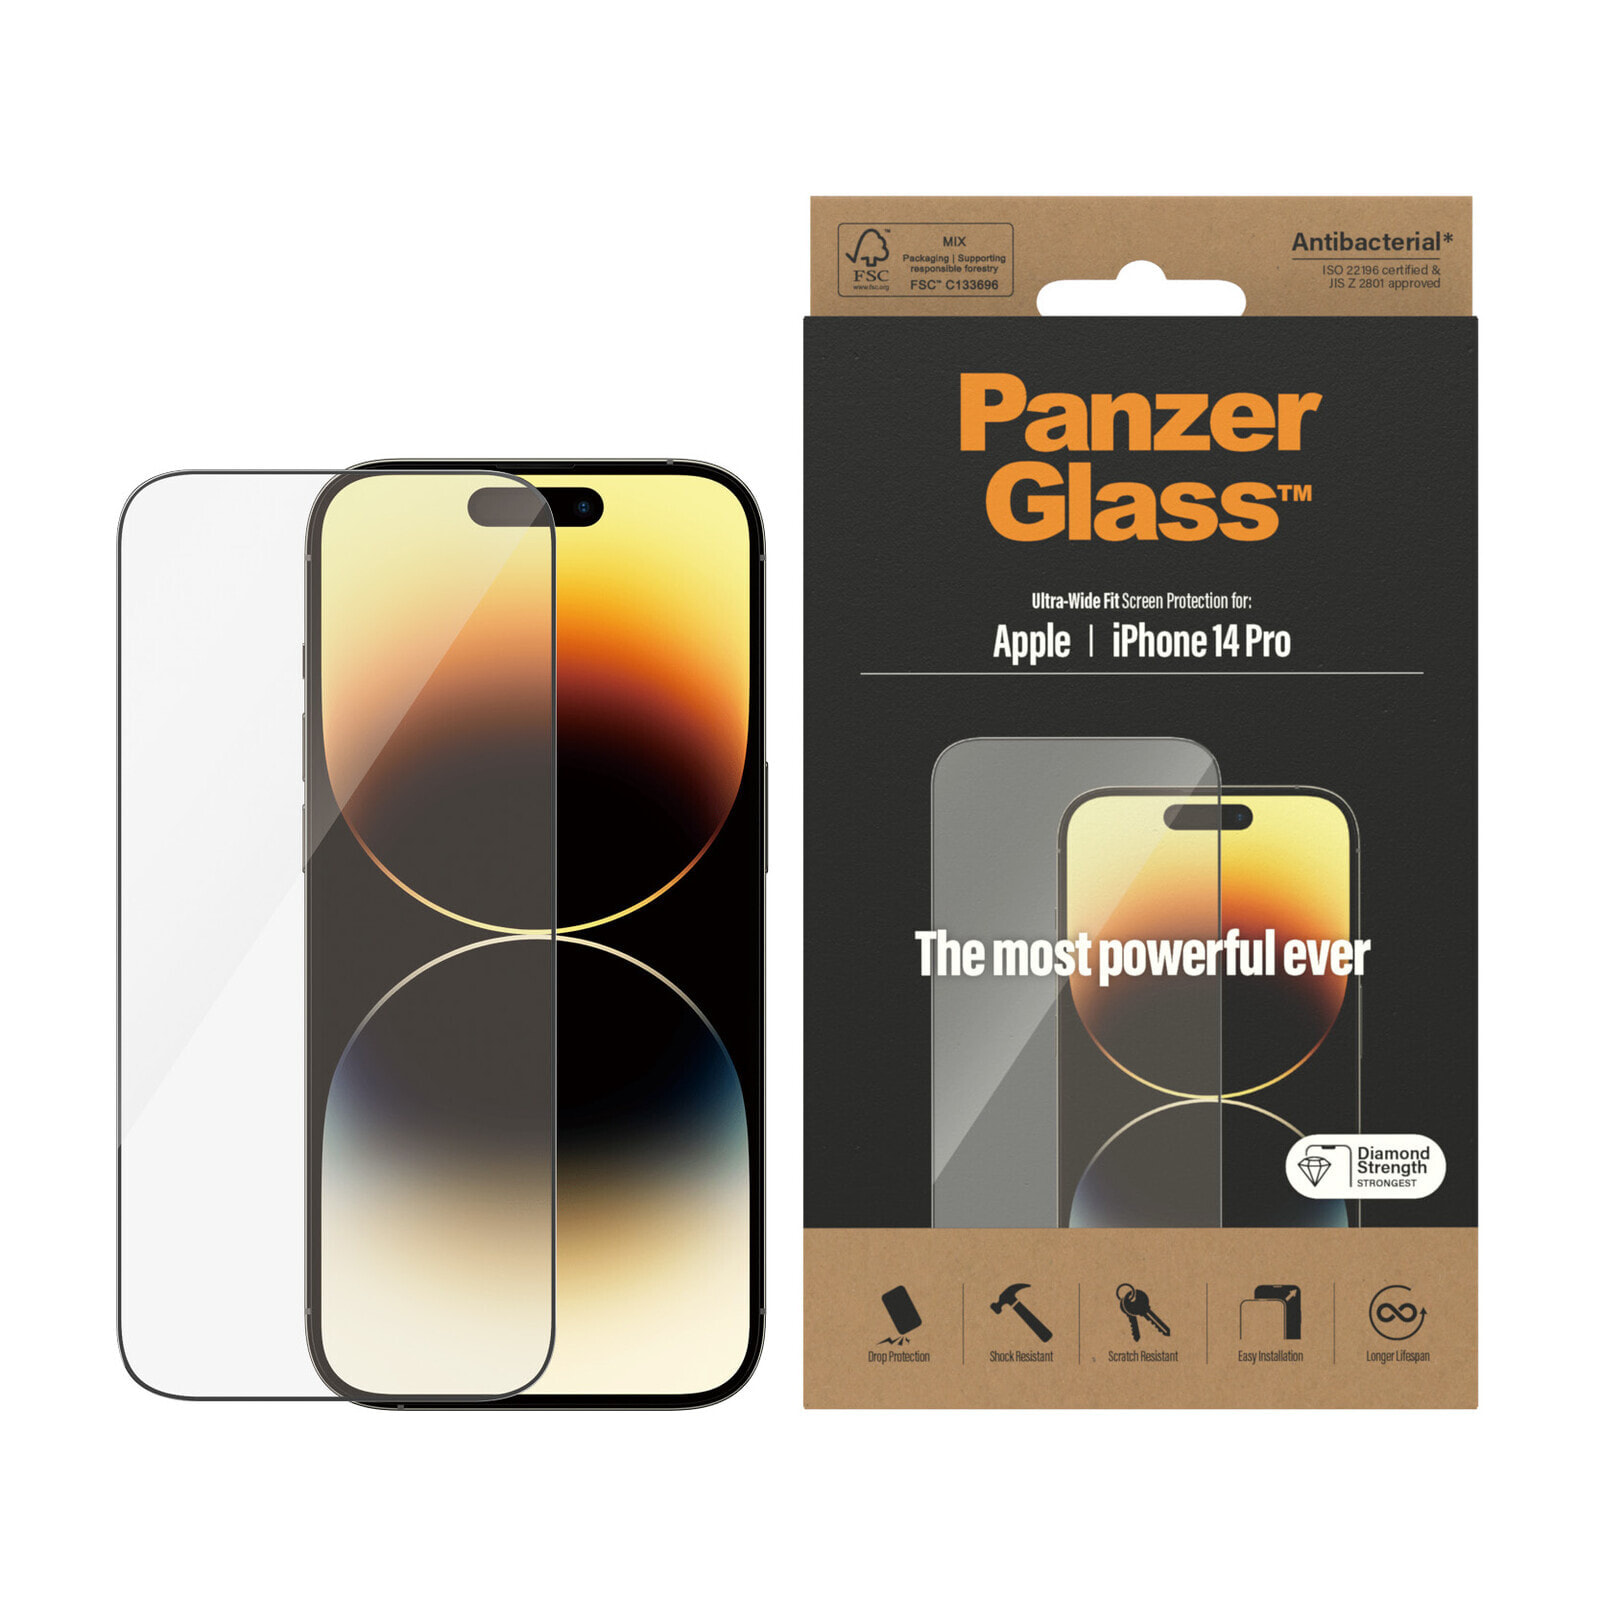 PanzerGlass Ultra-Wide Fit Apple iPhone Прозрачная защитная пленка 1 шт 2772